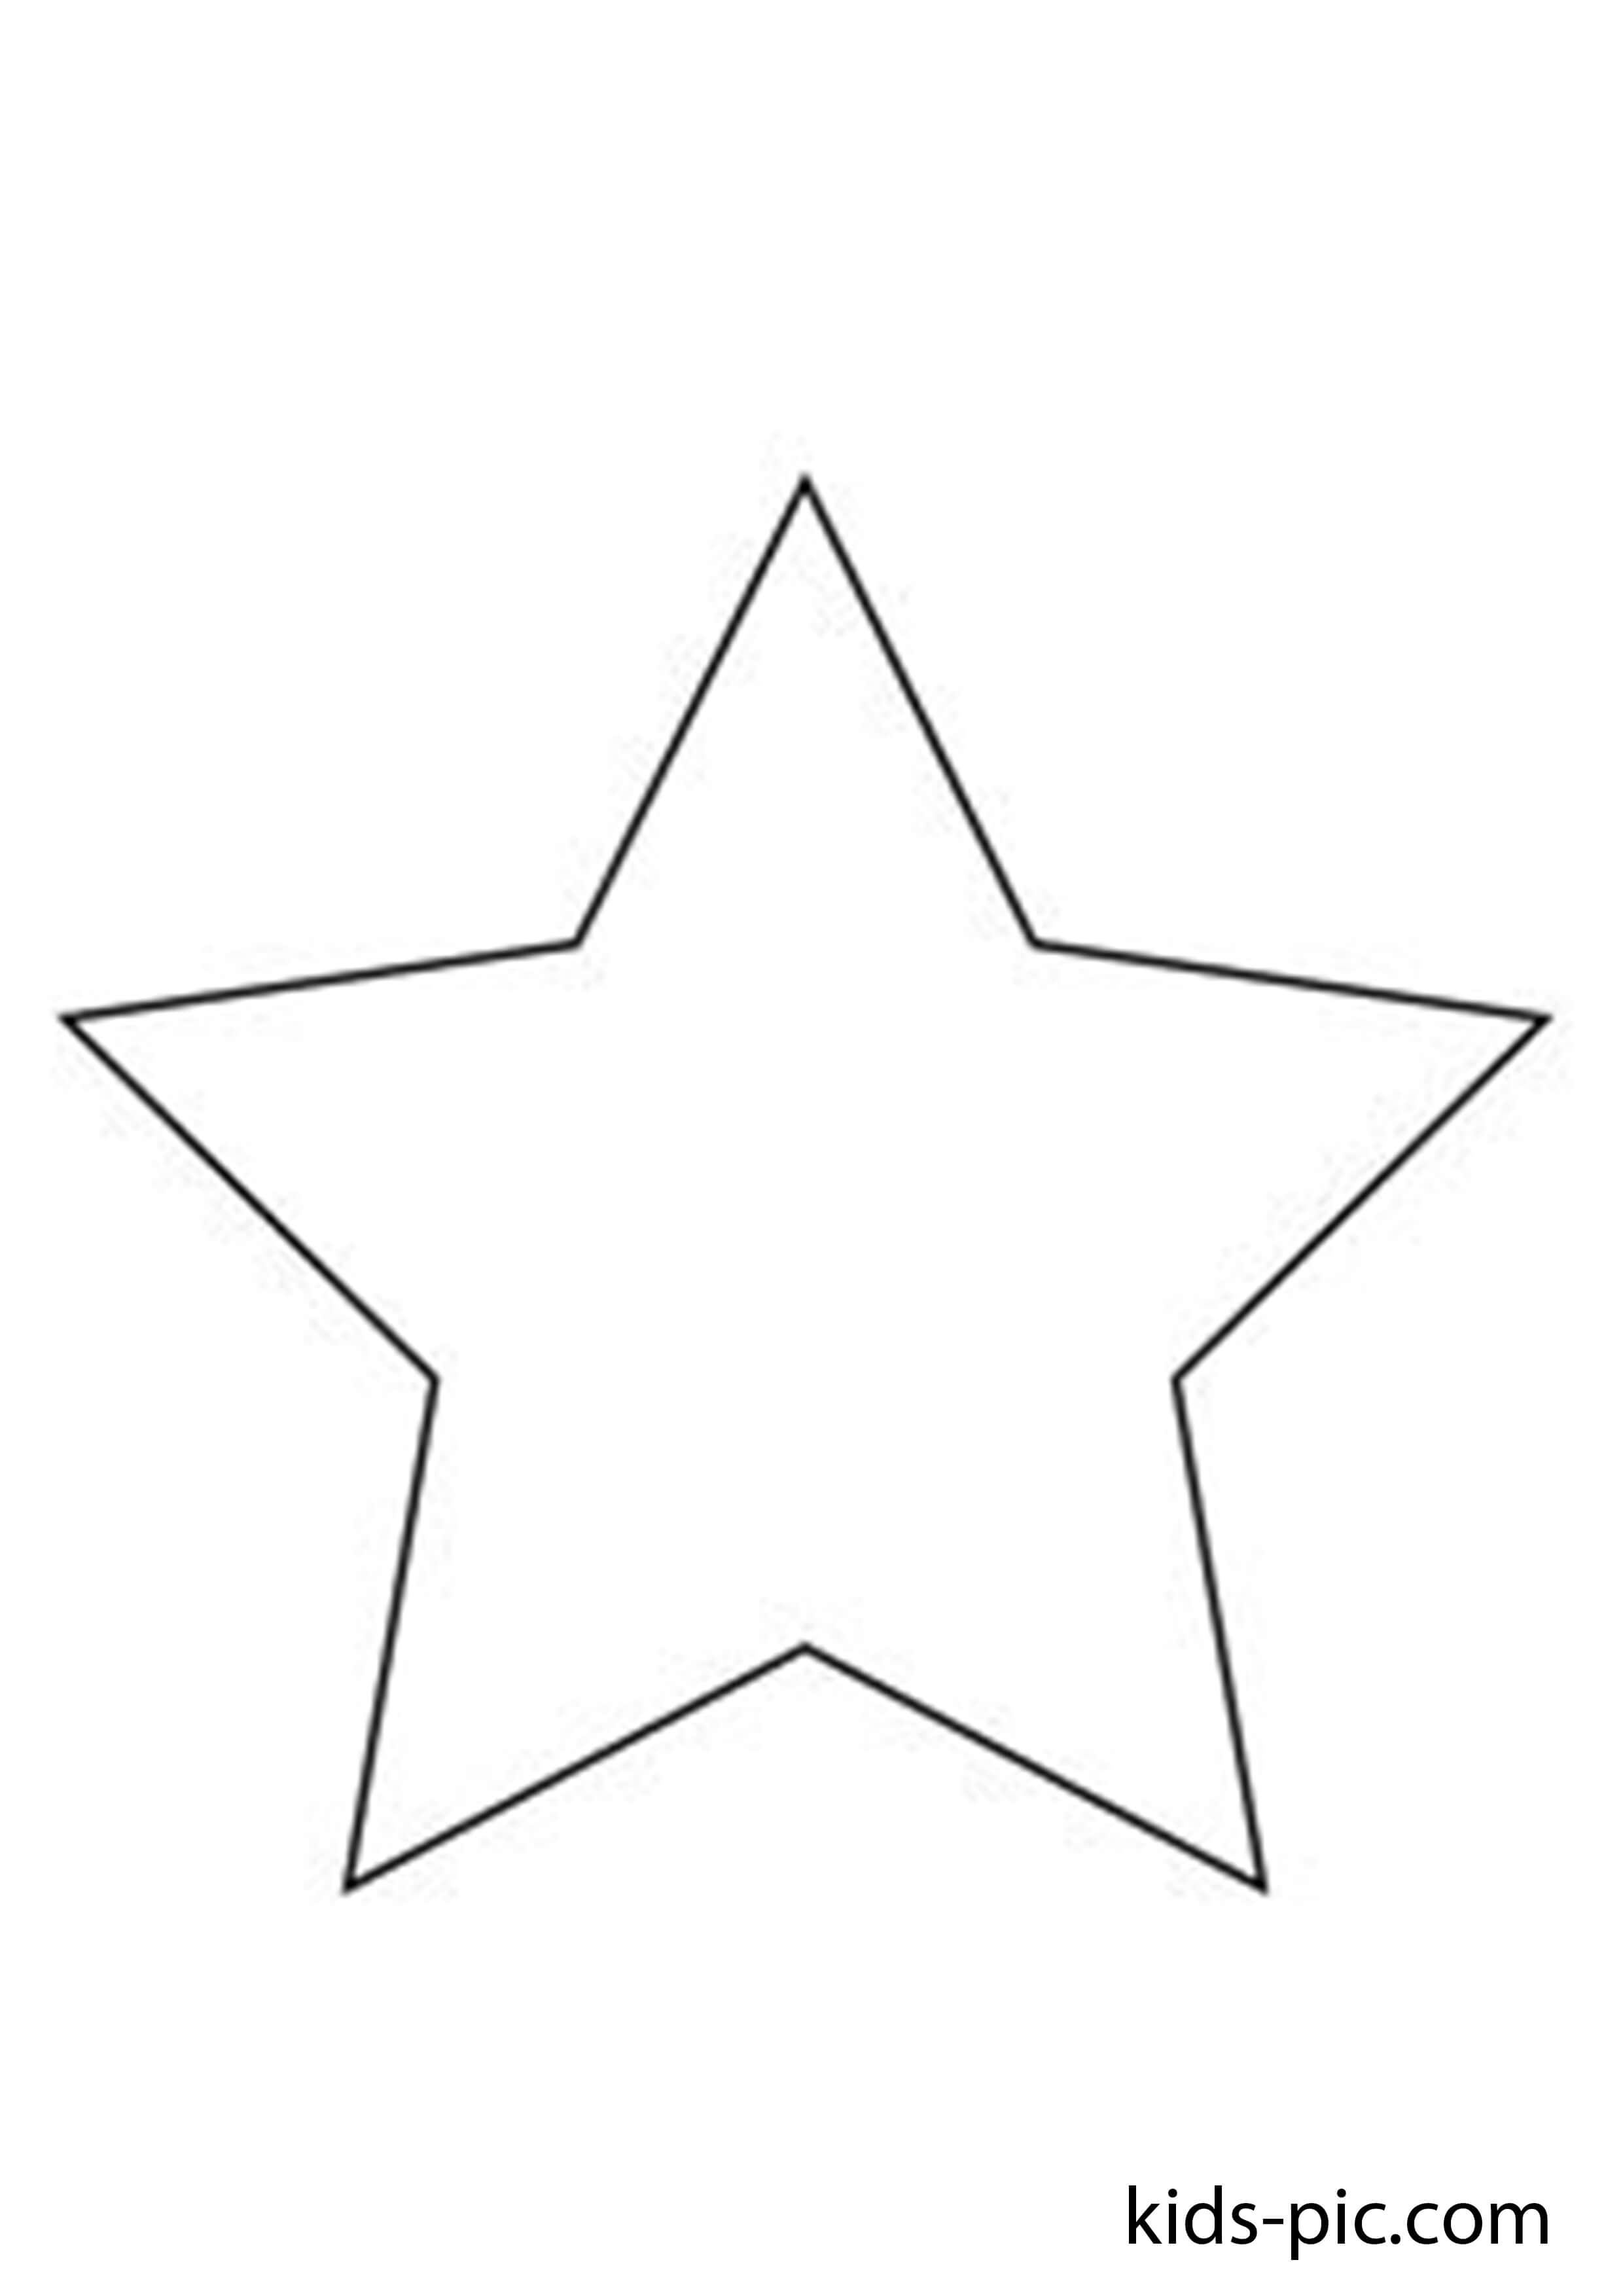 Звезда шаблон для вырезания к 9. Пятиконечная звезда 15 см. Звезда фигура. Контурное изображение звезды. Трафарет звезда для вырезания из бумаги.